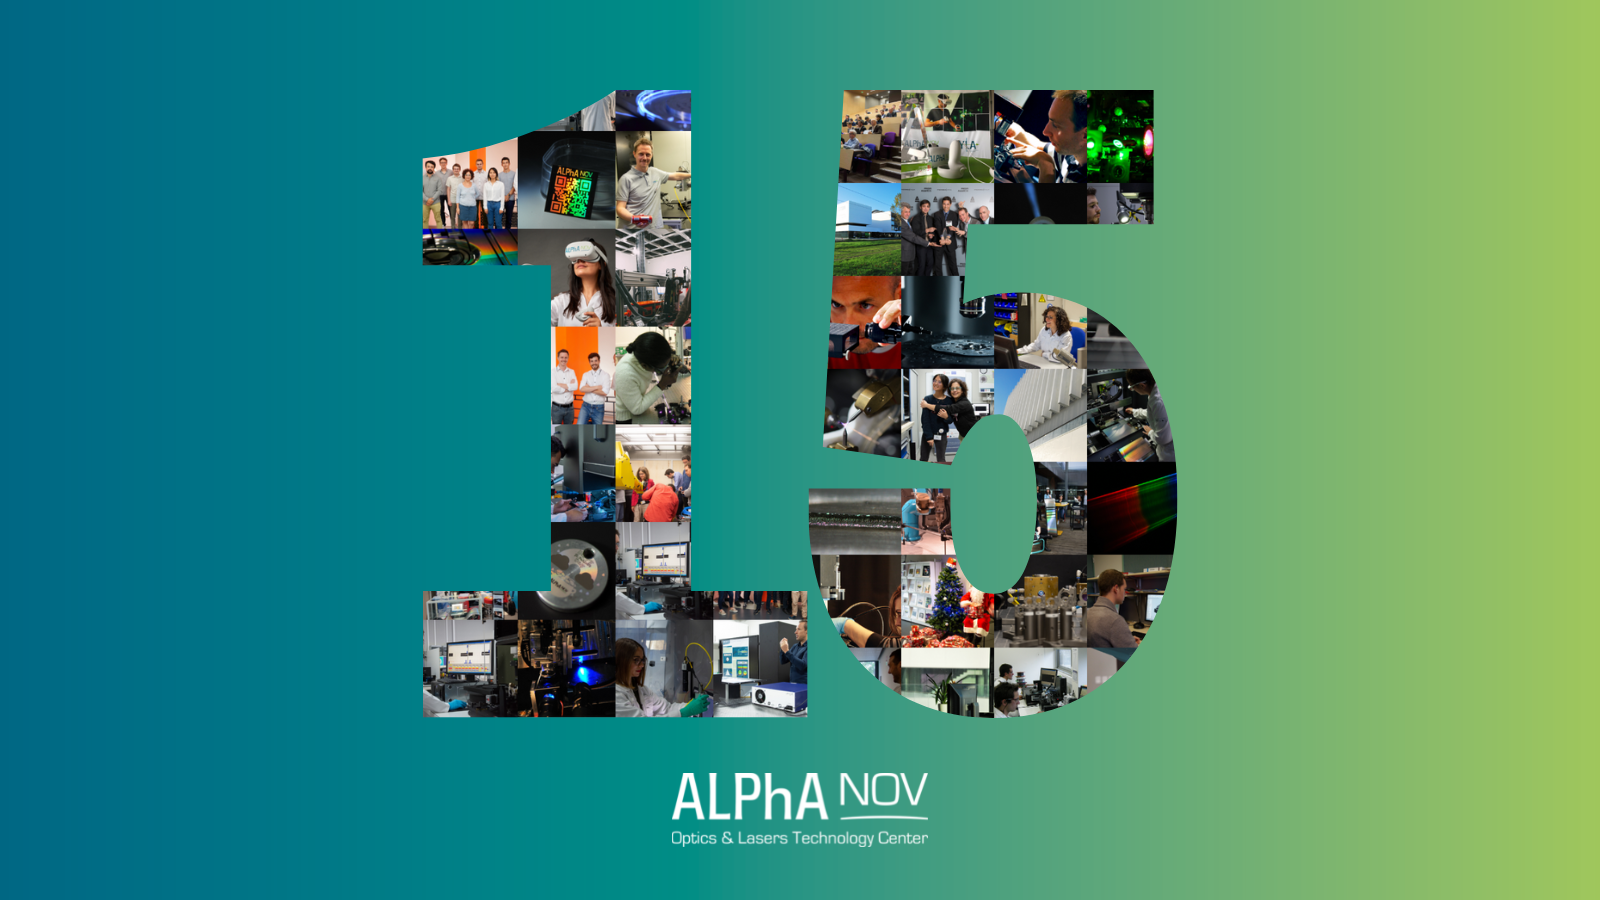 Le centre de ressources technologiques, ALPhANOV, célèbre ses 15 ans !